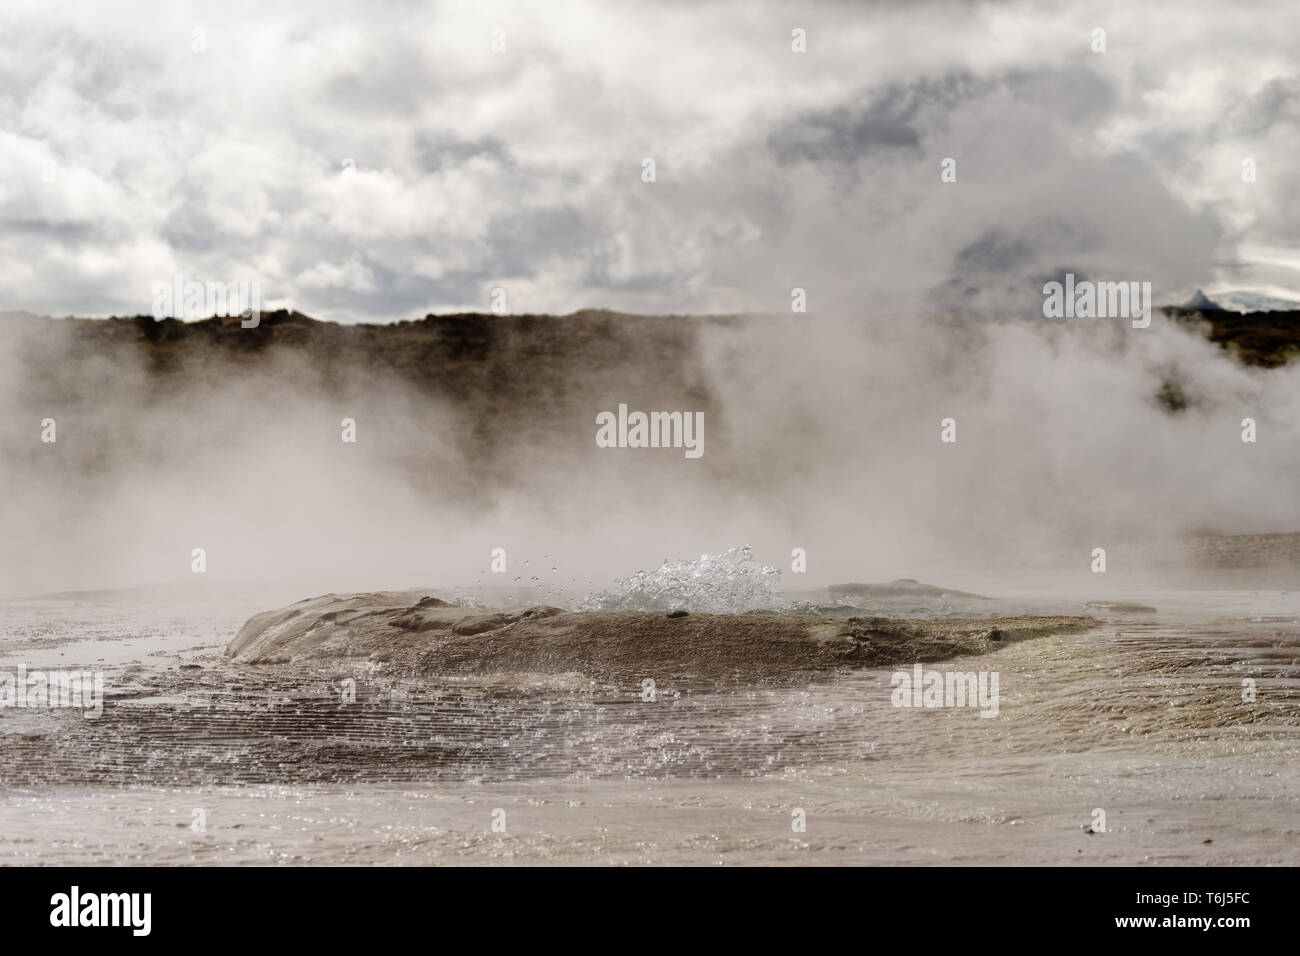 Geothermale Region mit starken Dampfauslass, Zentrum eines Beckens, wo heisses Wasser blasen, mineralische Ablagerungen - Ort: Island Stockfoto